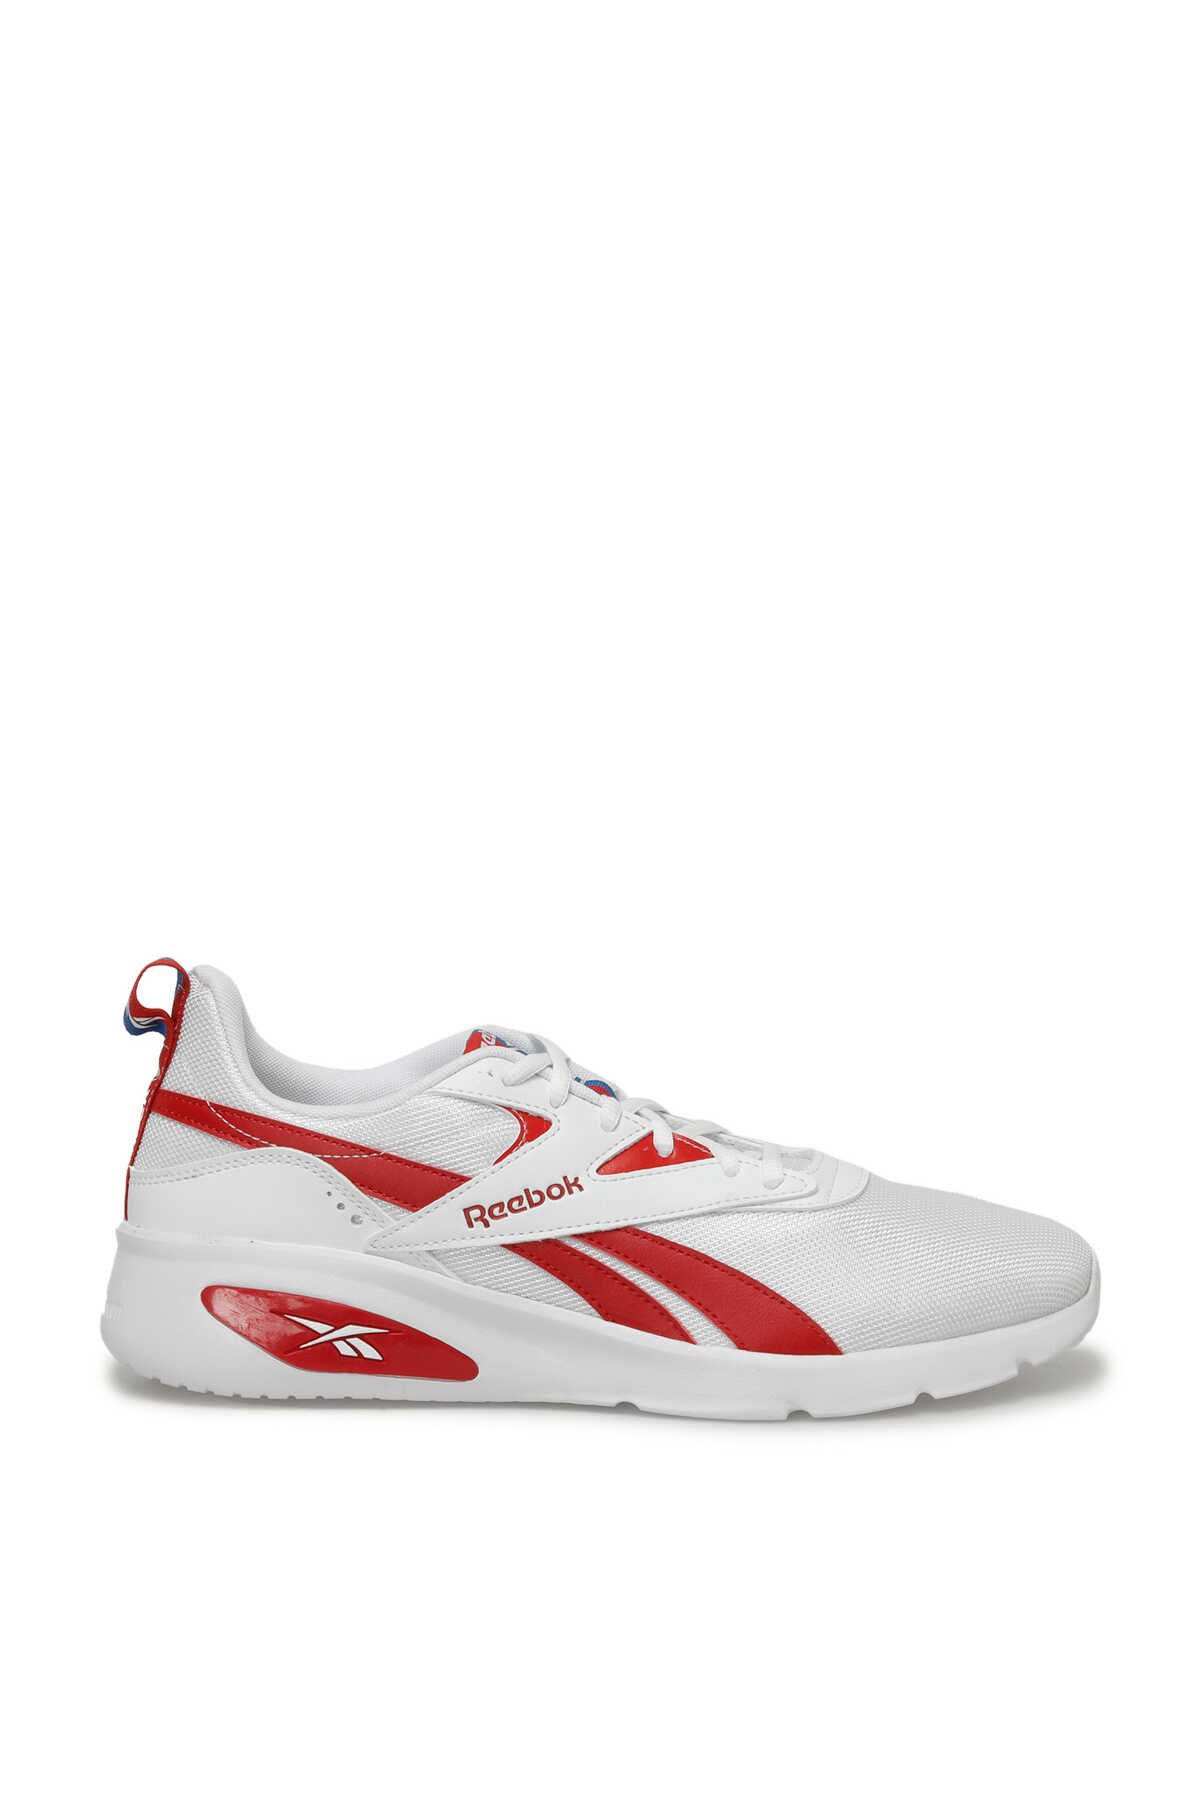 Reebok - Reebok RIDER Sneaker Unisex Ayakkabı Beyaz_0